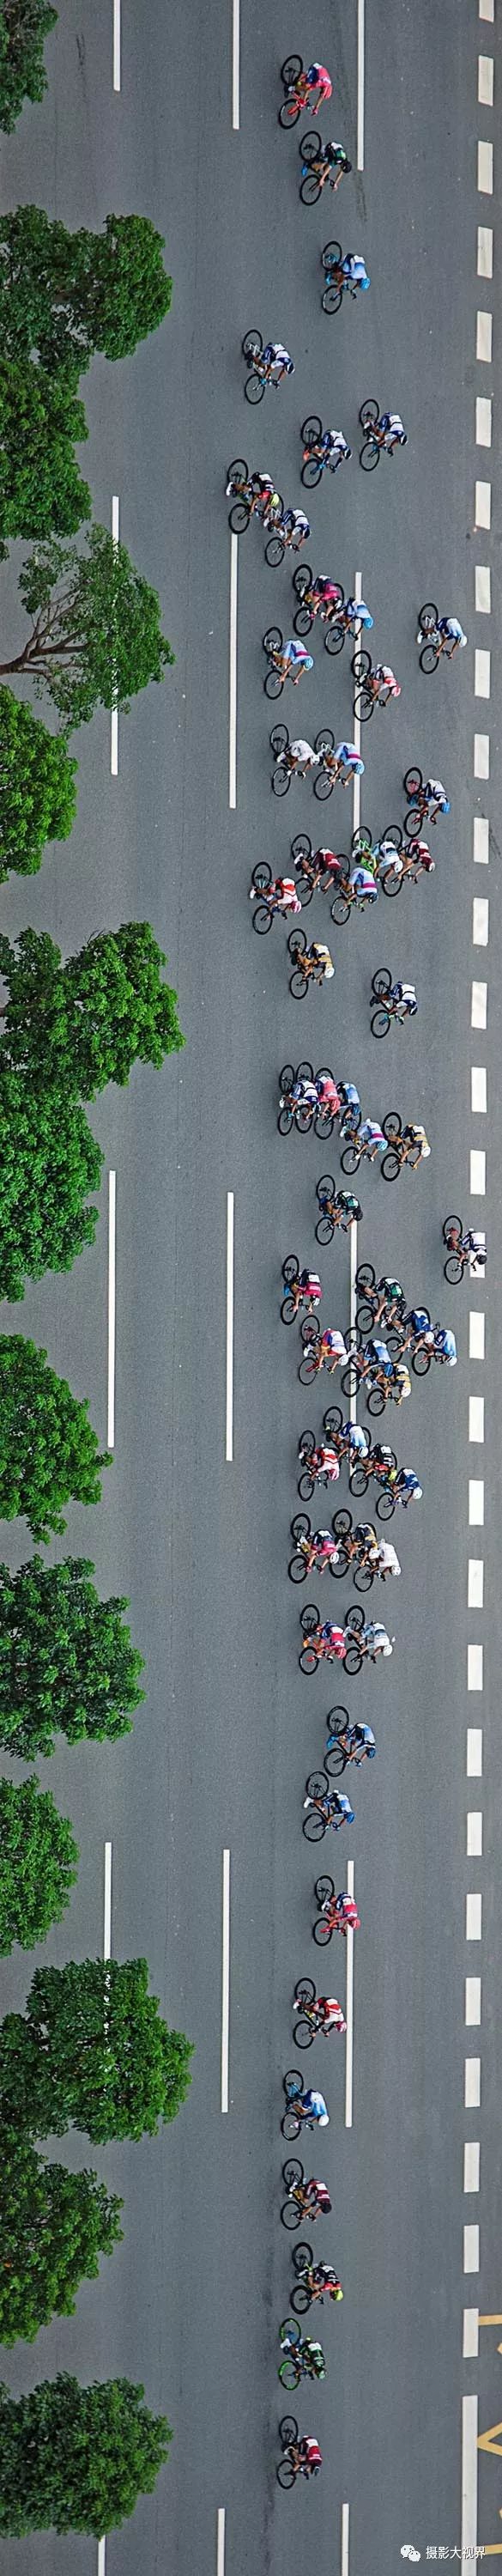 【收藏】环泉州湾自行车赛第一天高清美图乐鱼(中国)体育(图2)